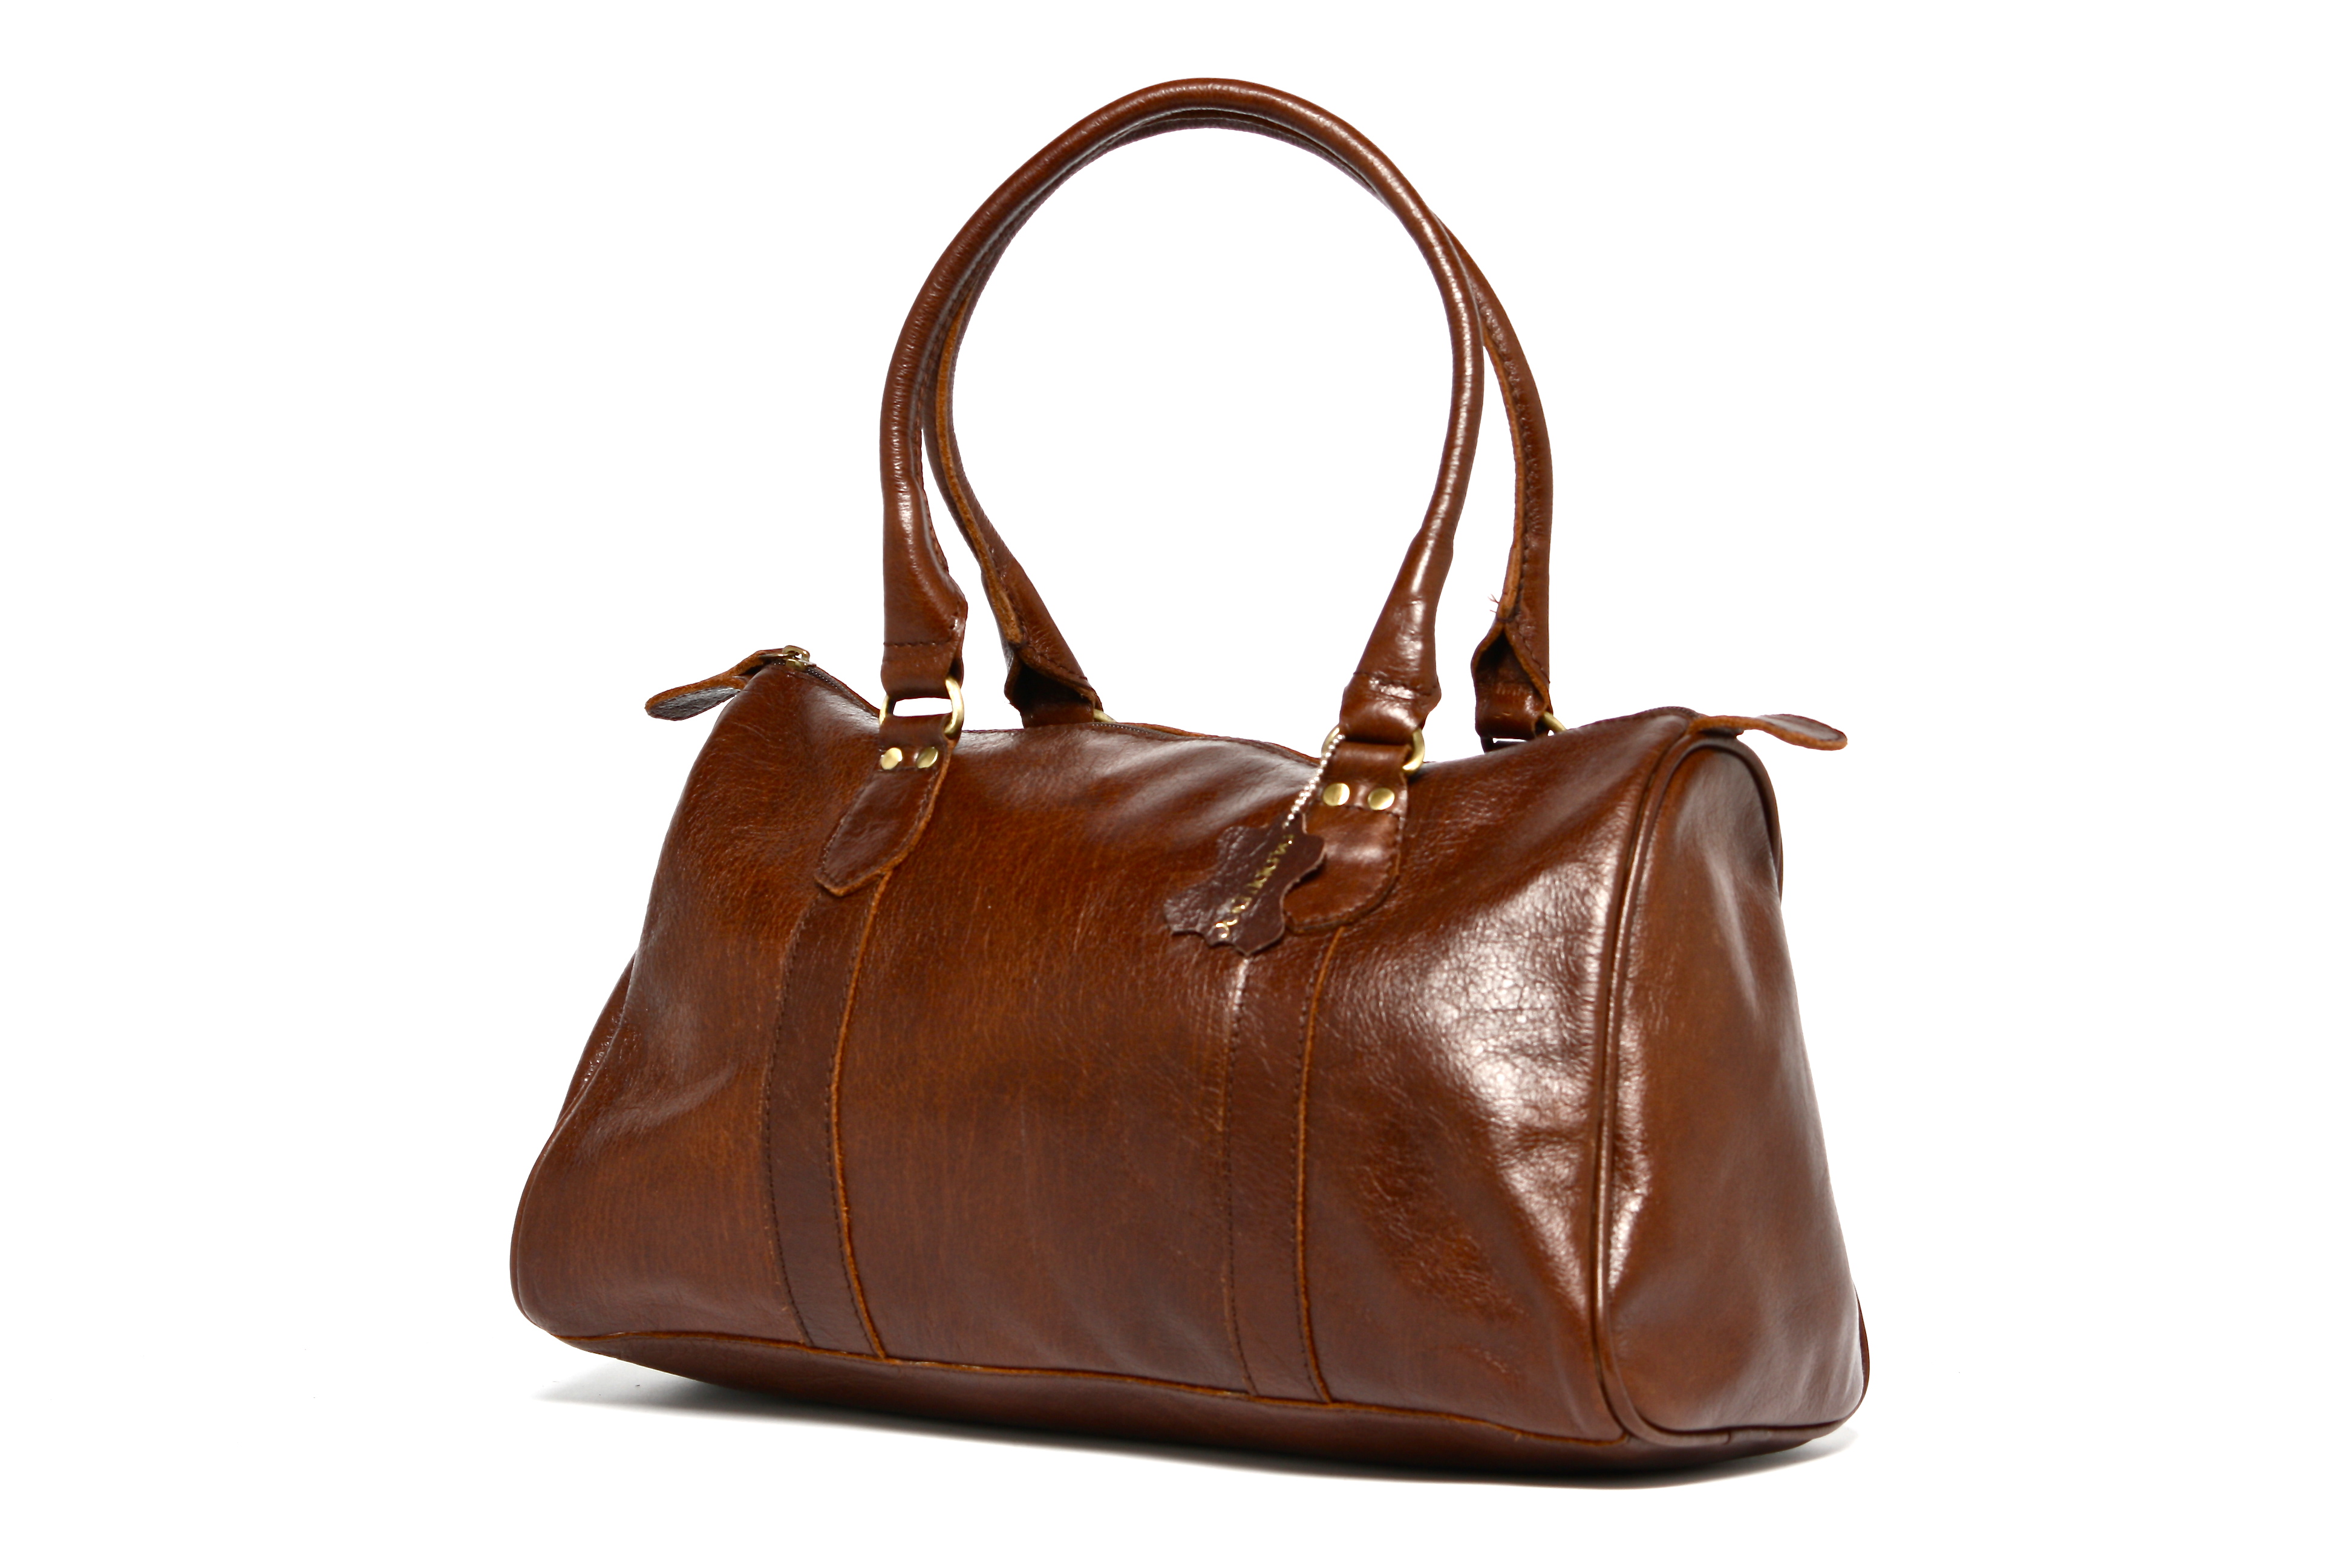 Brown handbags